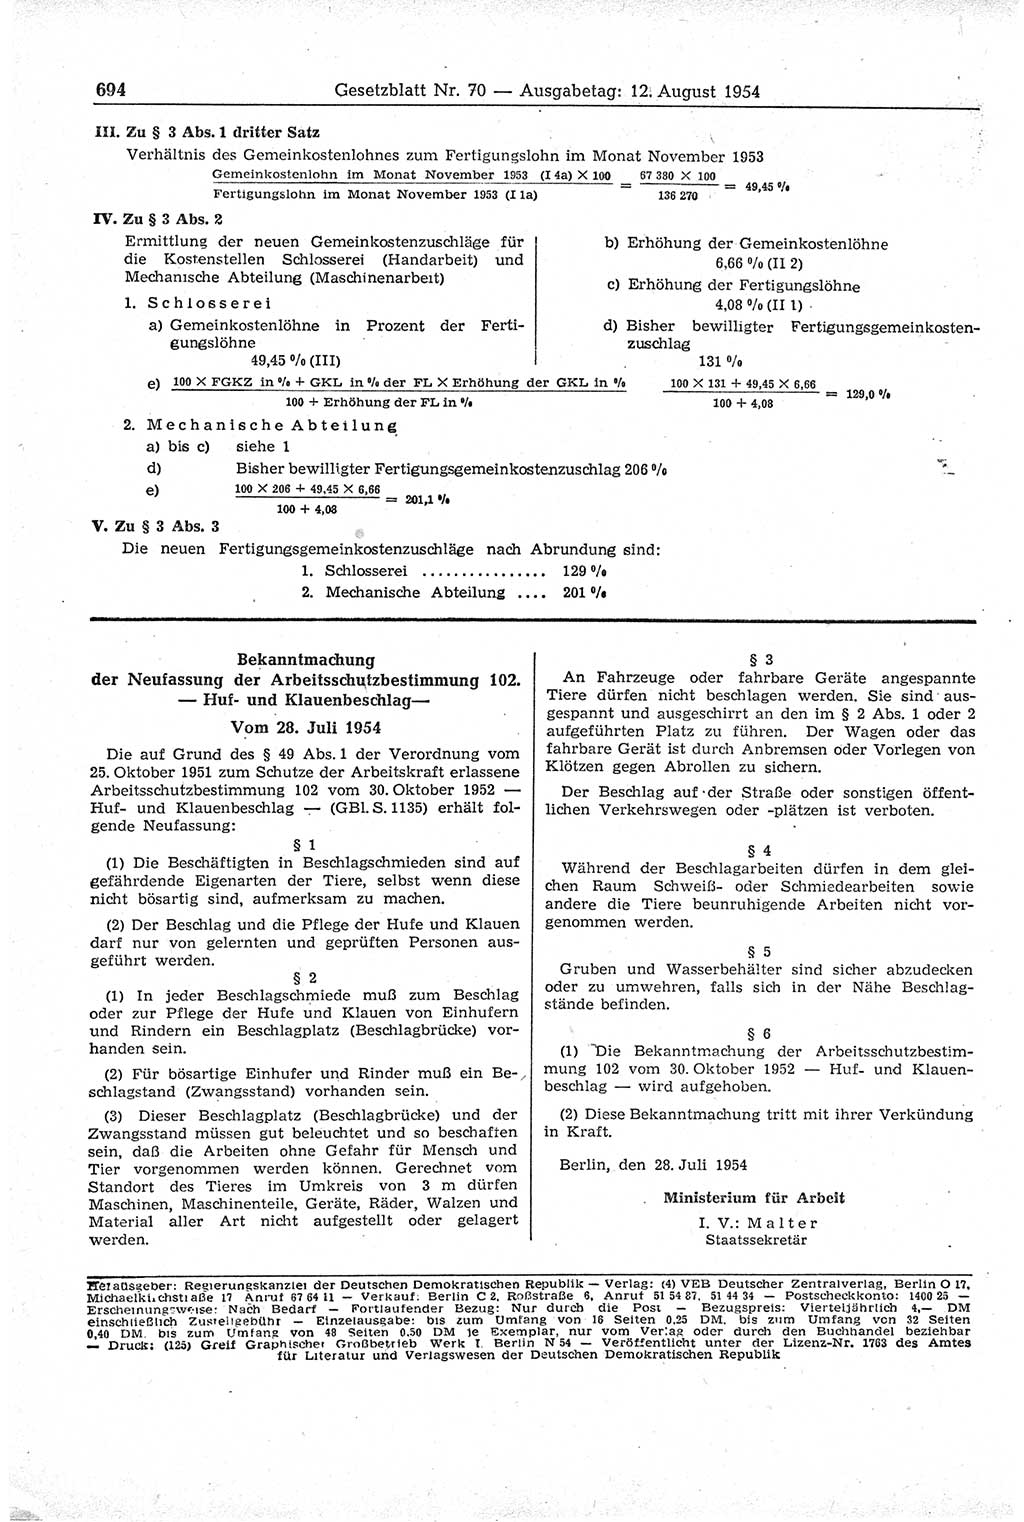 Gesetzblatt (GBl.) der Deutschen Demokratischen Republik (DDR) 1954, Seite 694 (GBl. DDR 1954, S. 694)